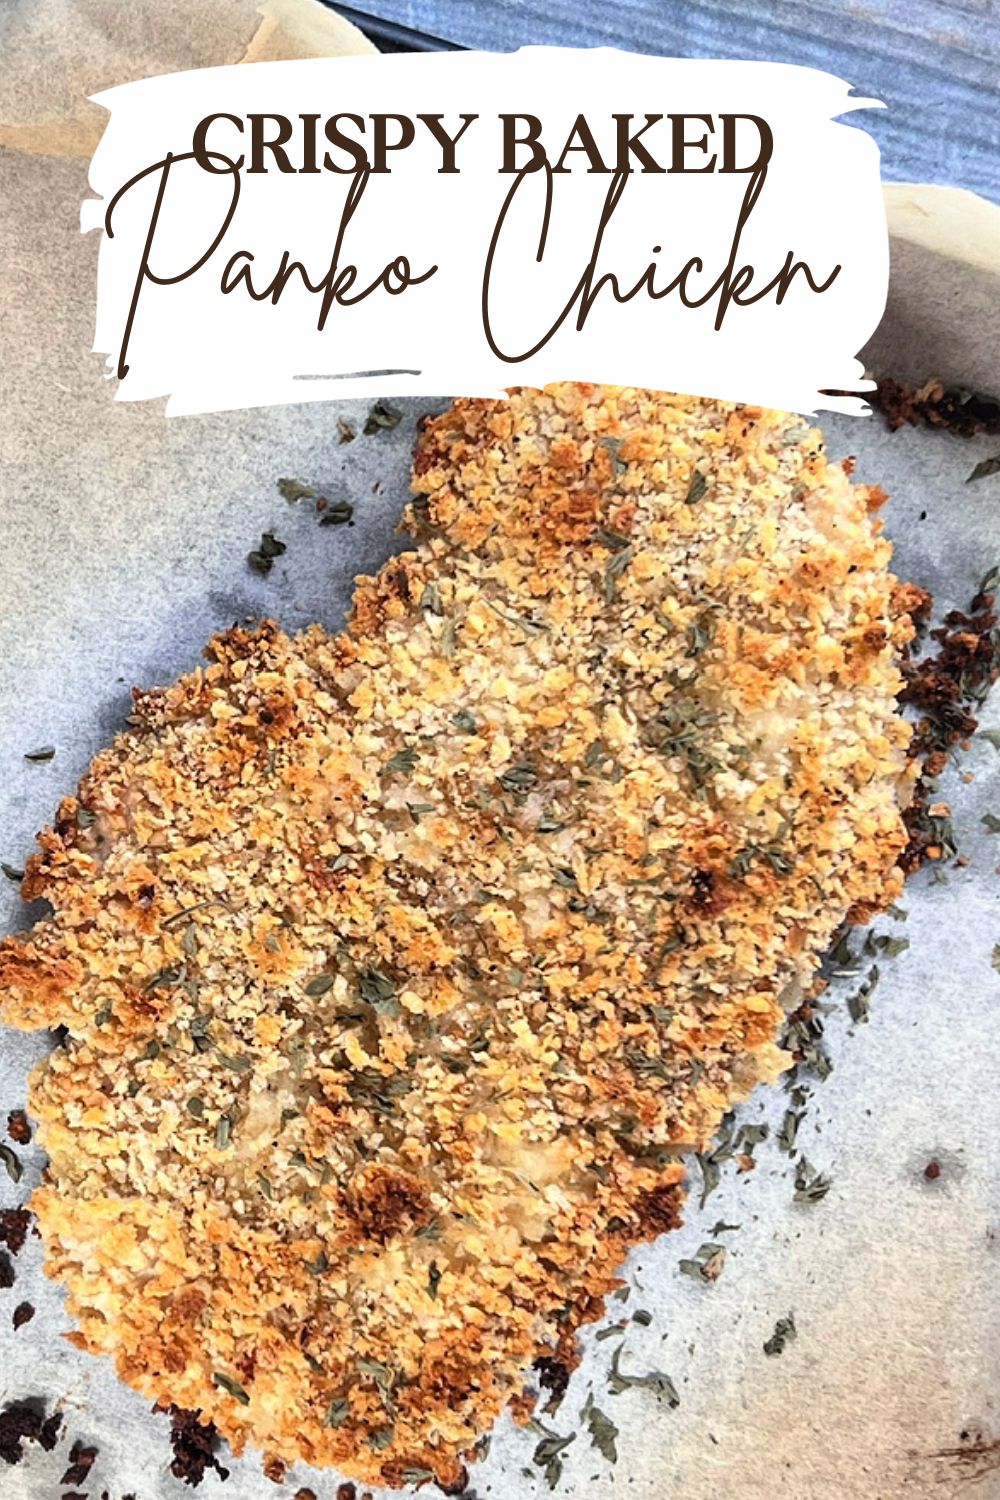 Easy Baked Crispy Panko Chicken via @preventionrd